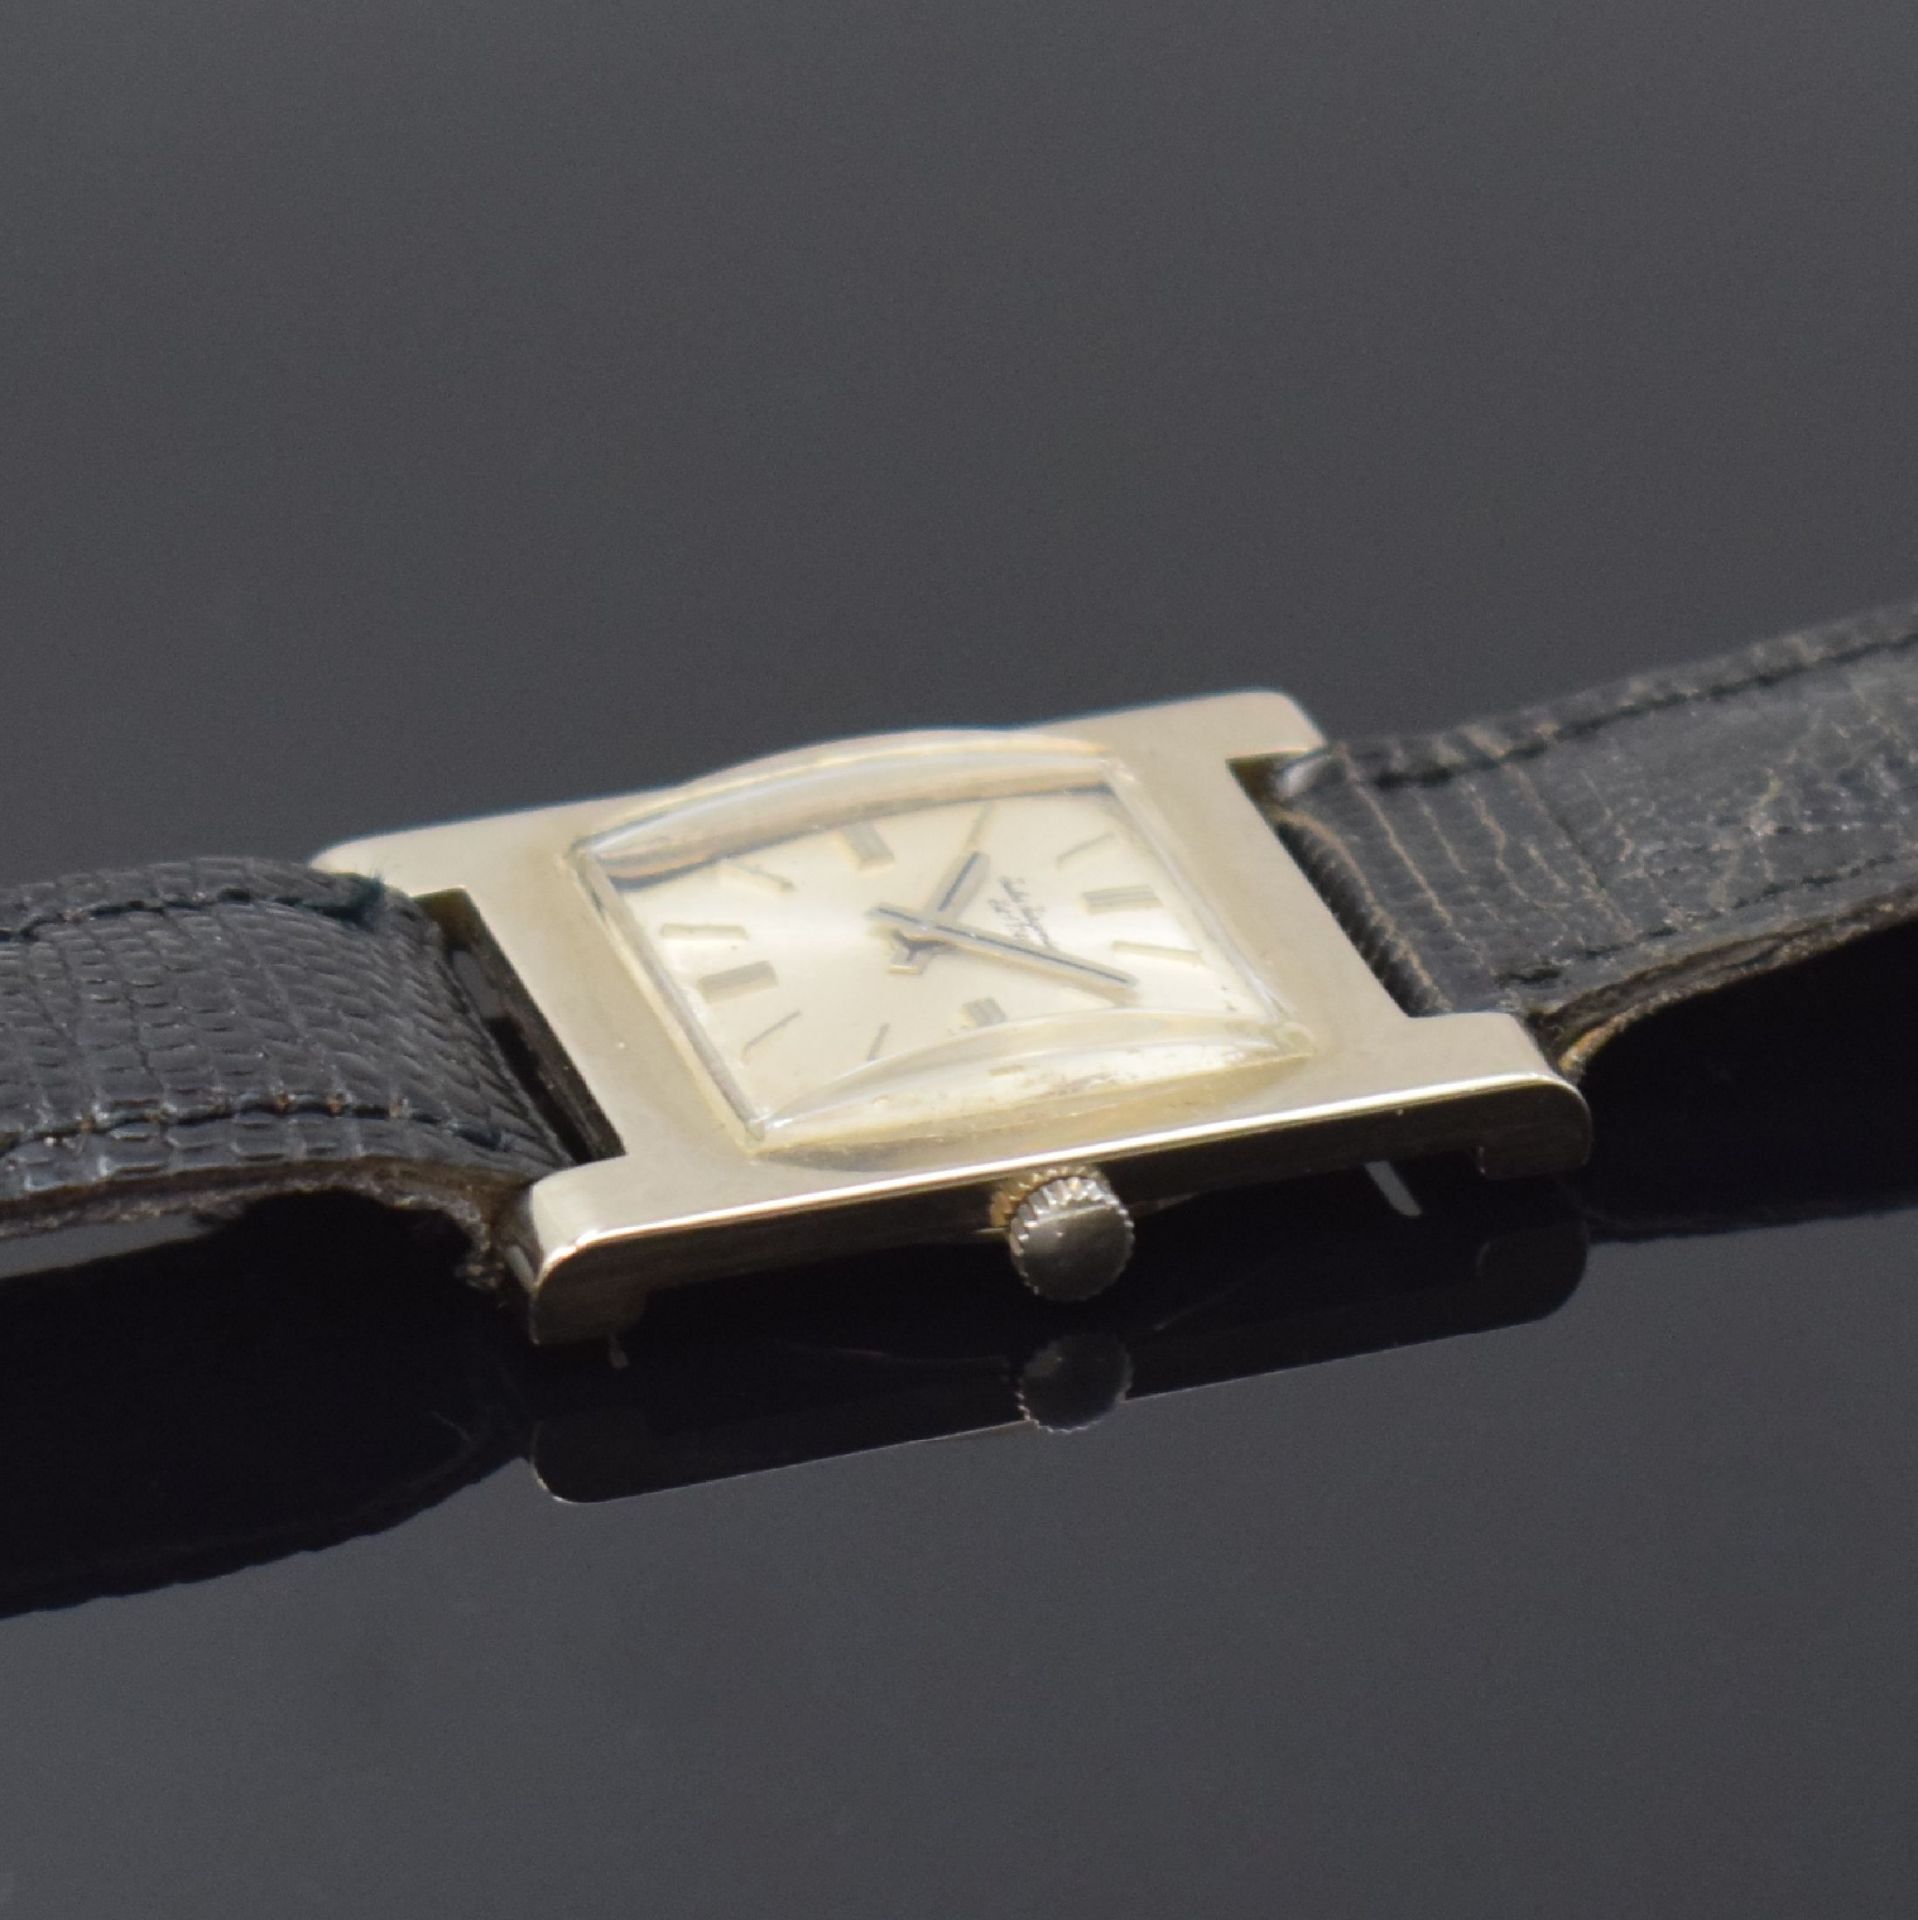 JULES JÜRGENSEN elegante rechteckige Armbanduhr in WG - Bild 3 aus 6